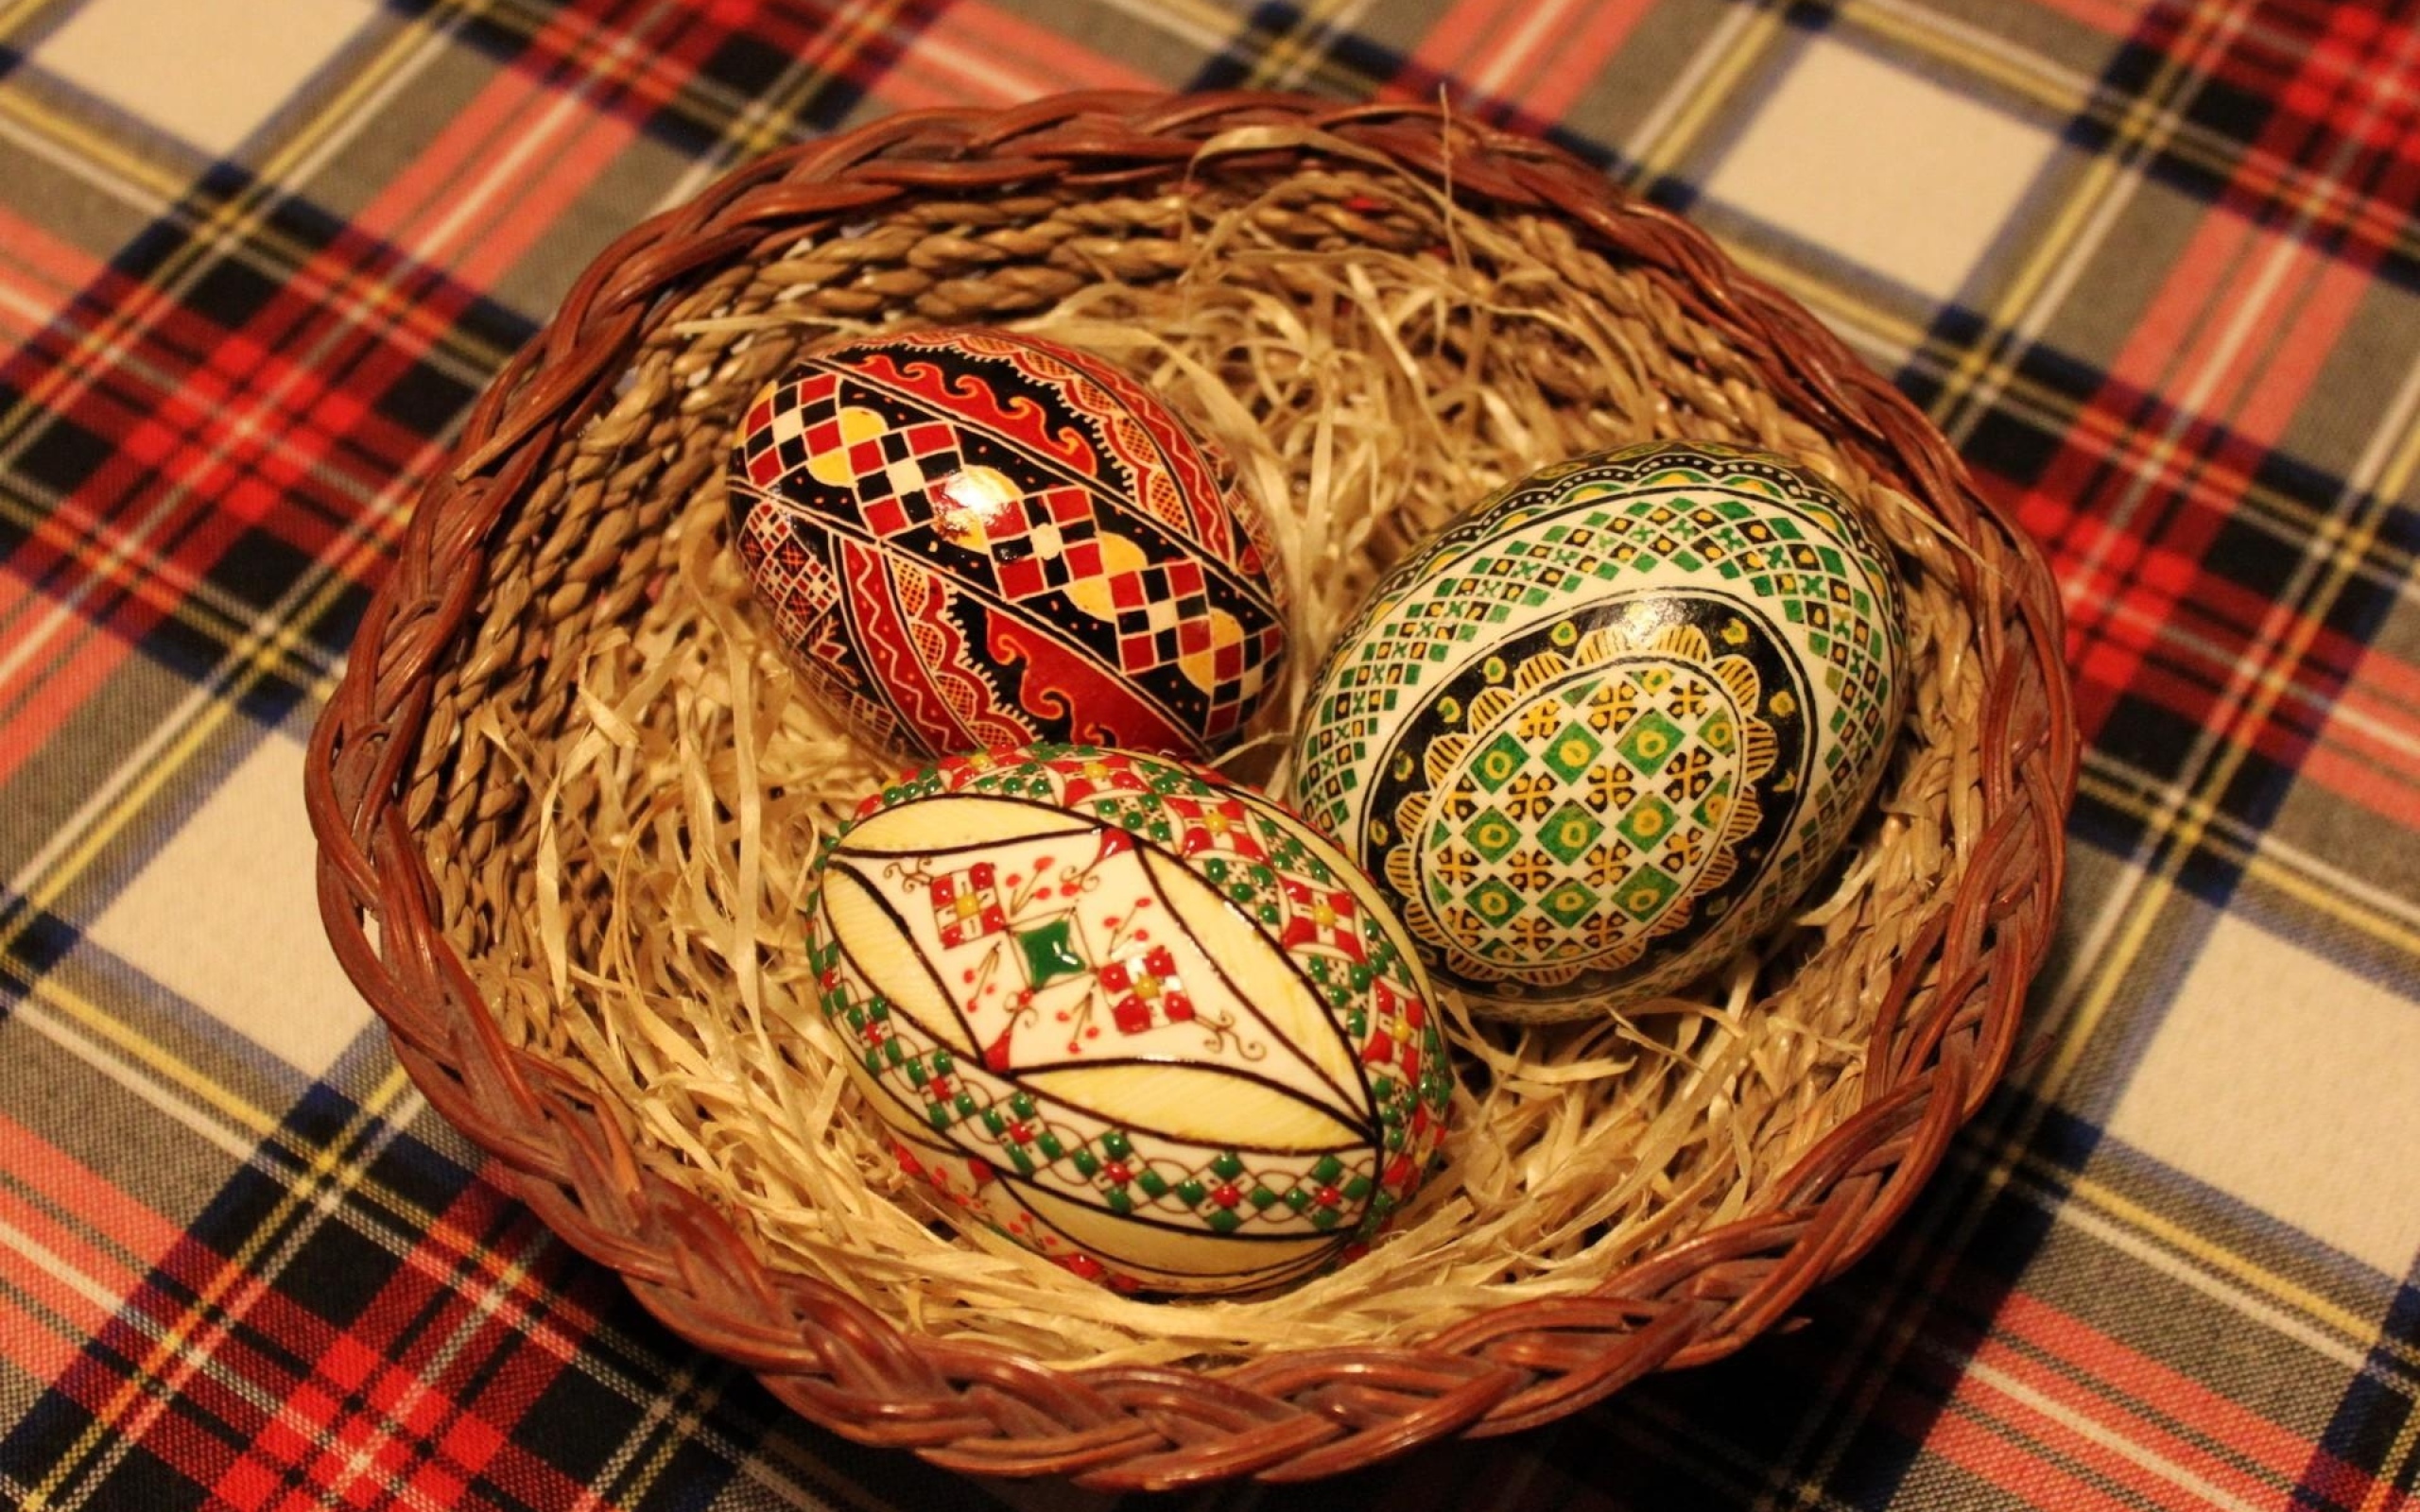 Три красивых яйца в корзине на праздник Пасха 